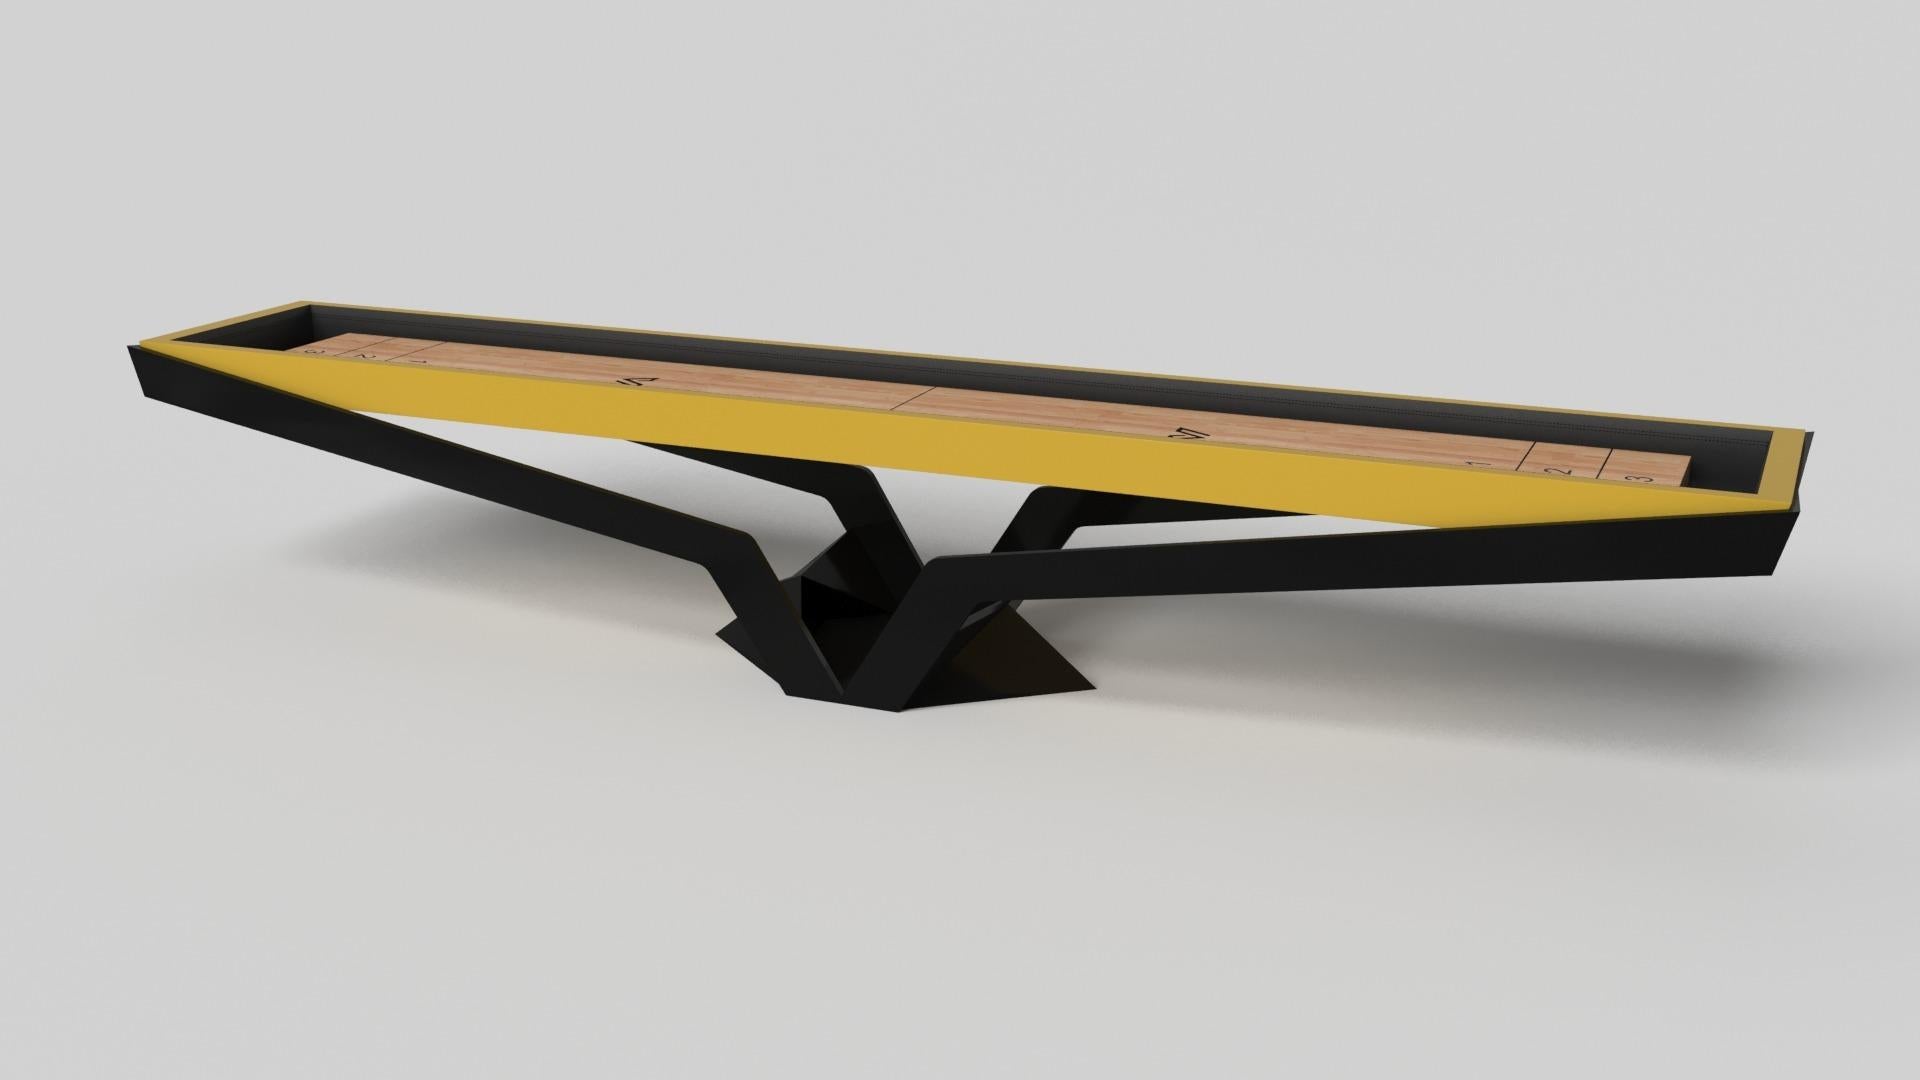 Der Enzo Shuffleboard-Tisch ist von den aerodynamischen Winkeln der europäischen Spitzenfahrzeuge inspiriert. Das Design mit seinen schlanken, V-förmigen Linien und der durchdachten Nutzung des negativen Raums verleiht diesem Tisch einen